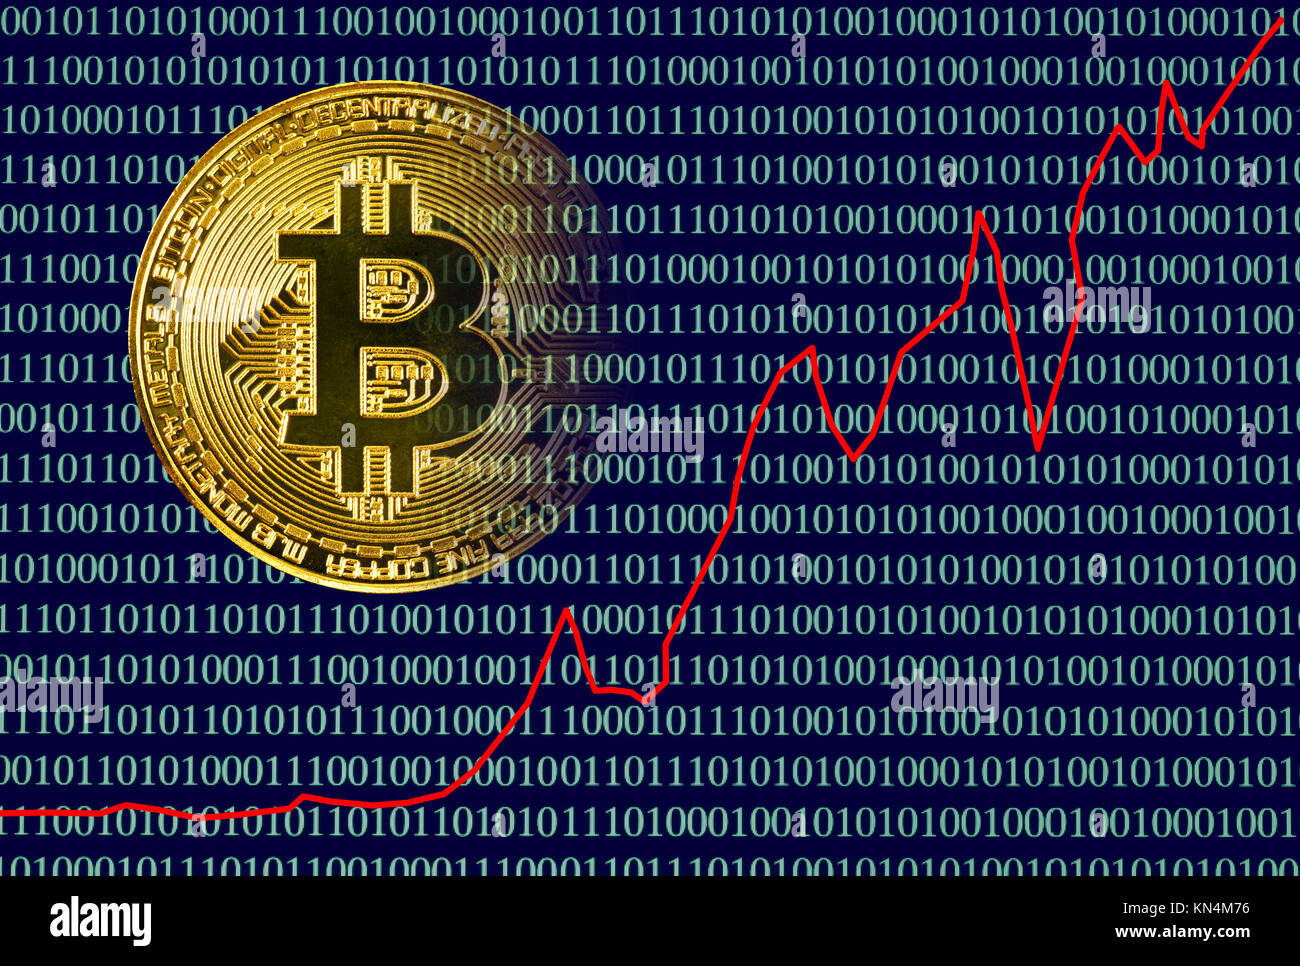 Imagen Símbolo de actuación, moneda digital bitcoin moneda física de oro digital portátil con código binario Foto de stock